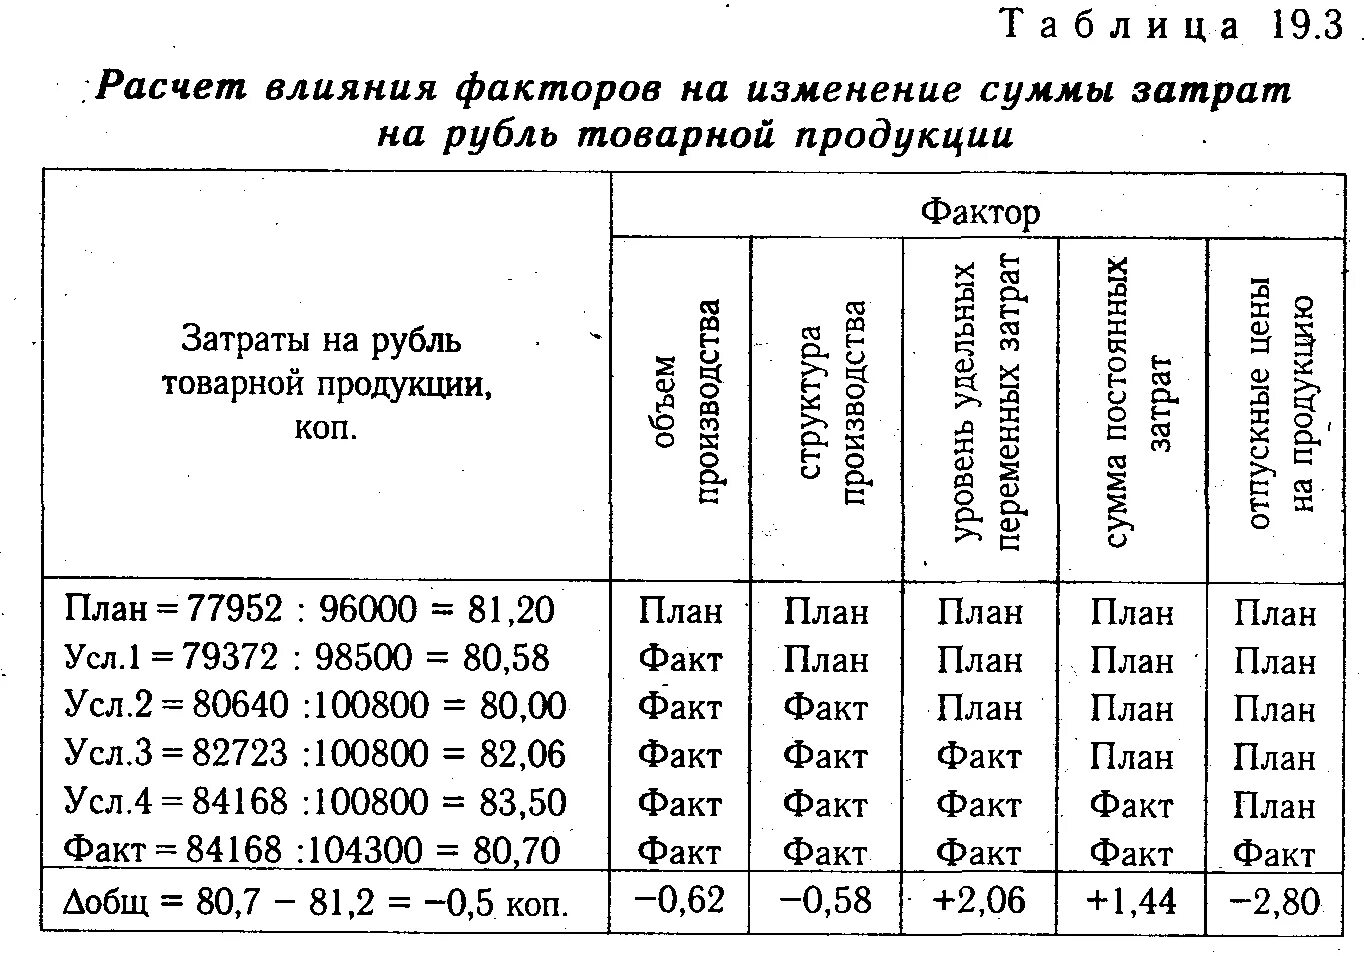 Анализ затрат на 1 рубль продукции. Анализ затрат на 1 руб. Товарной продукции. Влияние факторов на изменения затрат. Расчет влияния факторов.